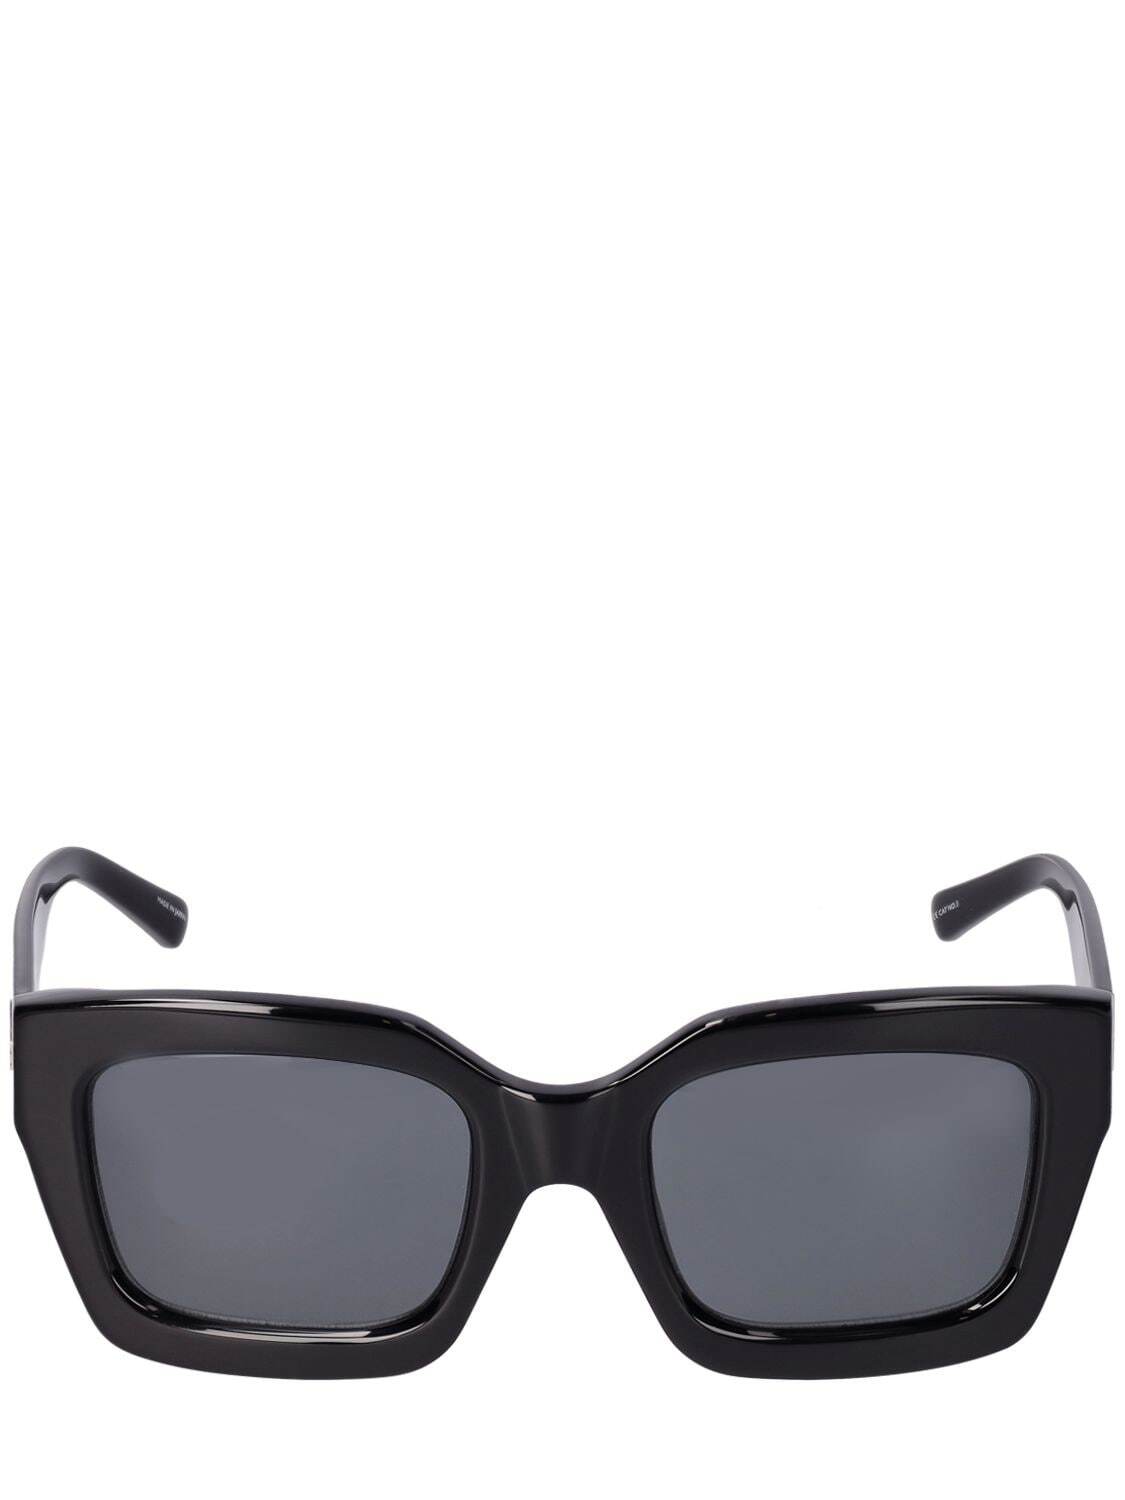 THE ATTICO Selma Squared Bio Acetate Sunglasses in black / grey